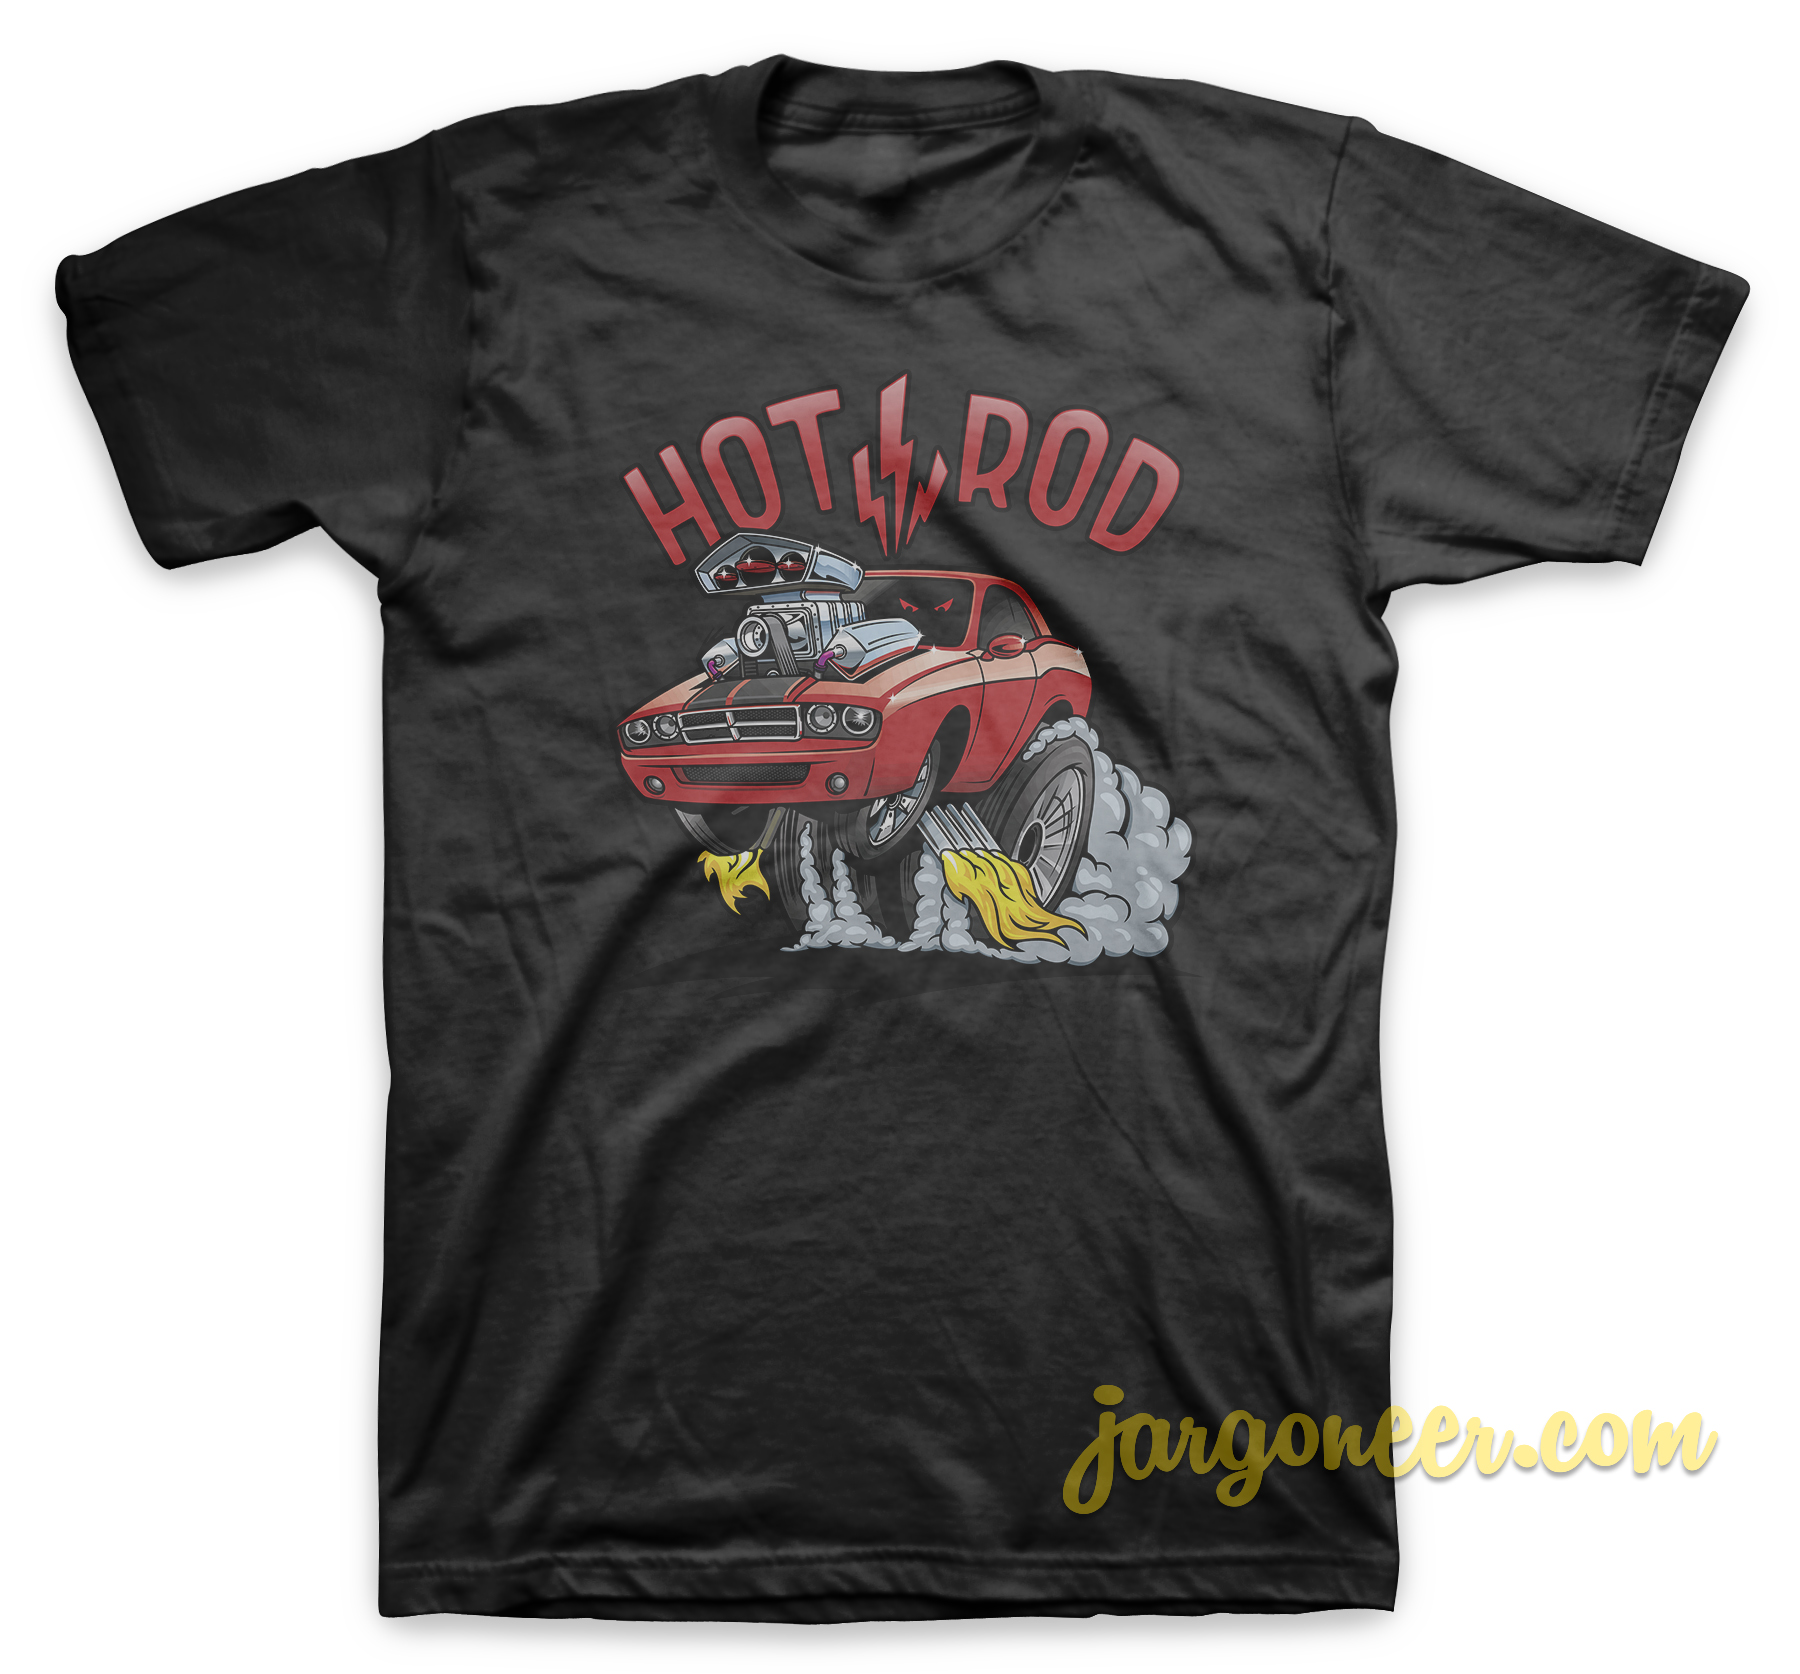 Hotrod On Fire Black T Shirt - Shop Unique Graphic Cool Shirt Designs